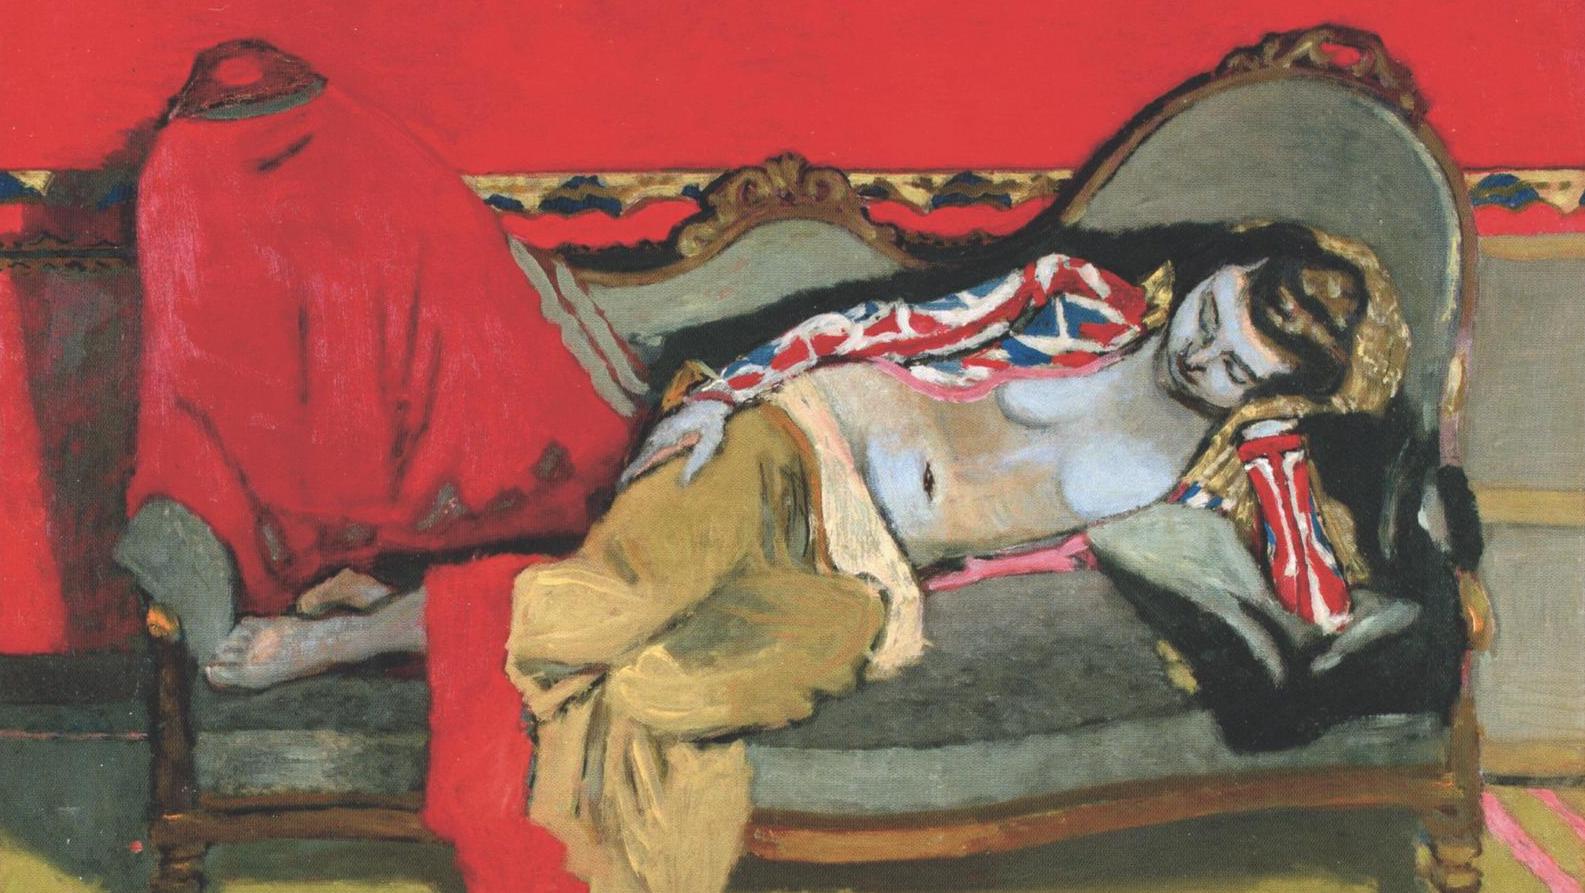 Maurice Brianchon (1899-1979), Le Repos, nu costumé, 1940, huile sur toile, 65 x 92 cm.... Un Repos de Brianchon au pedigree irréprochable